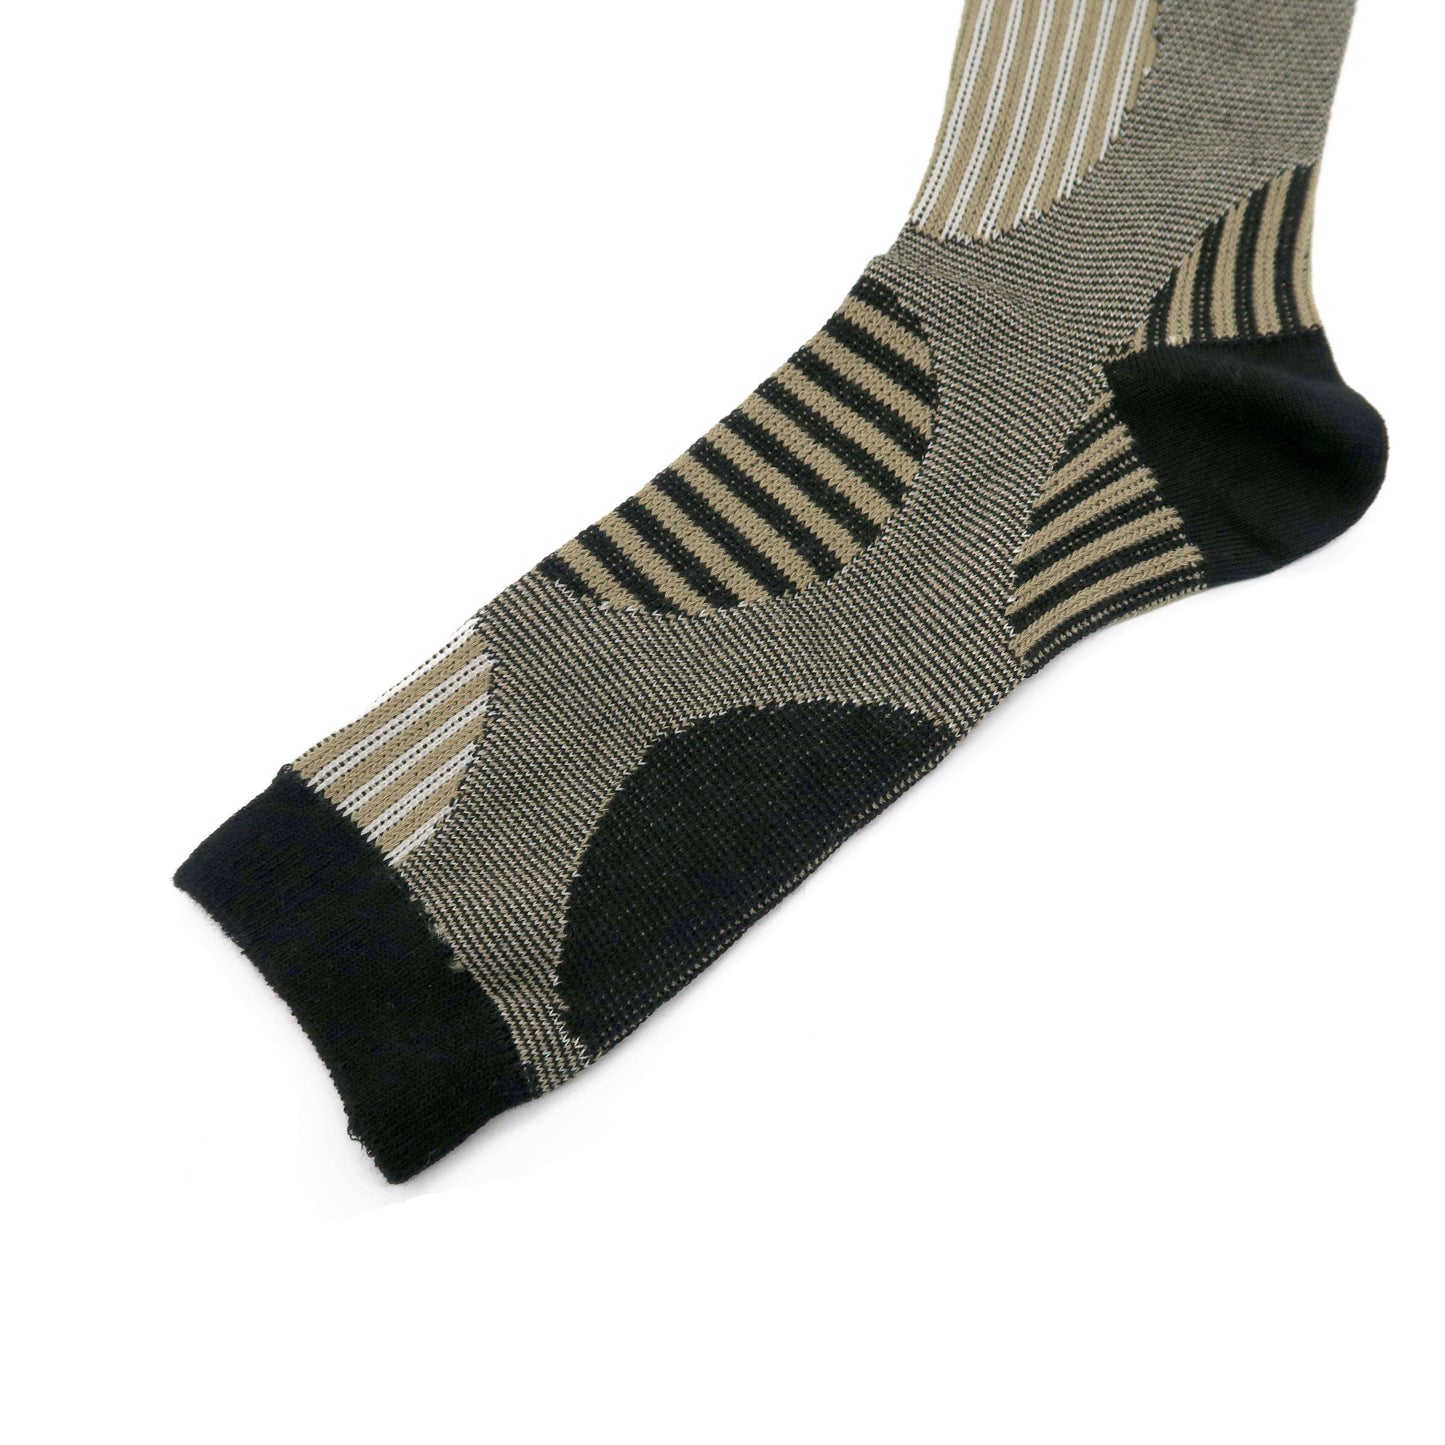 marui black socks - stripy big polka dots pattern